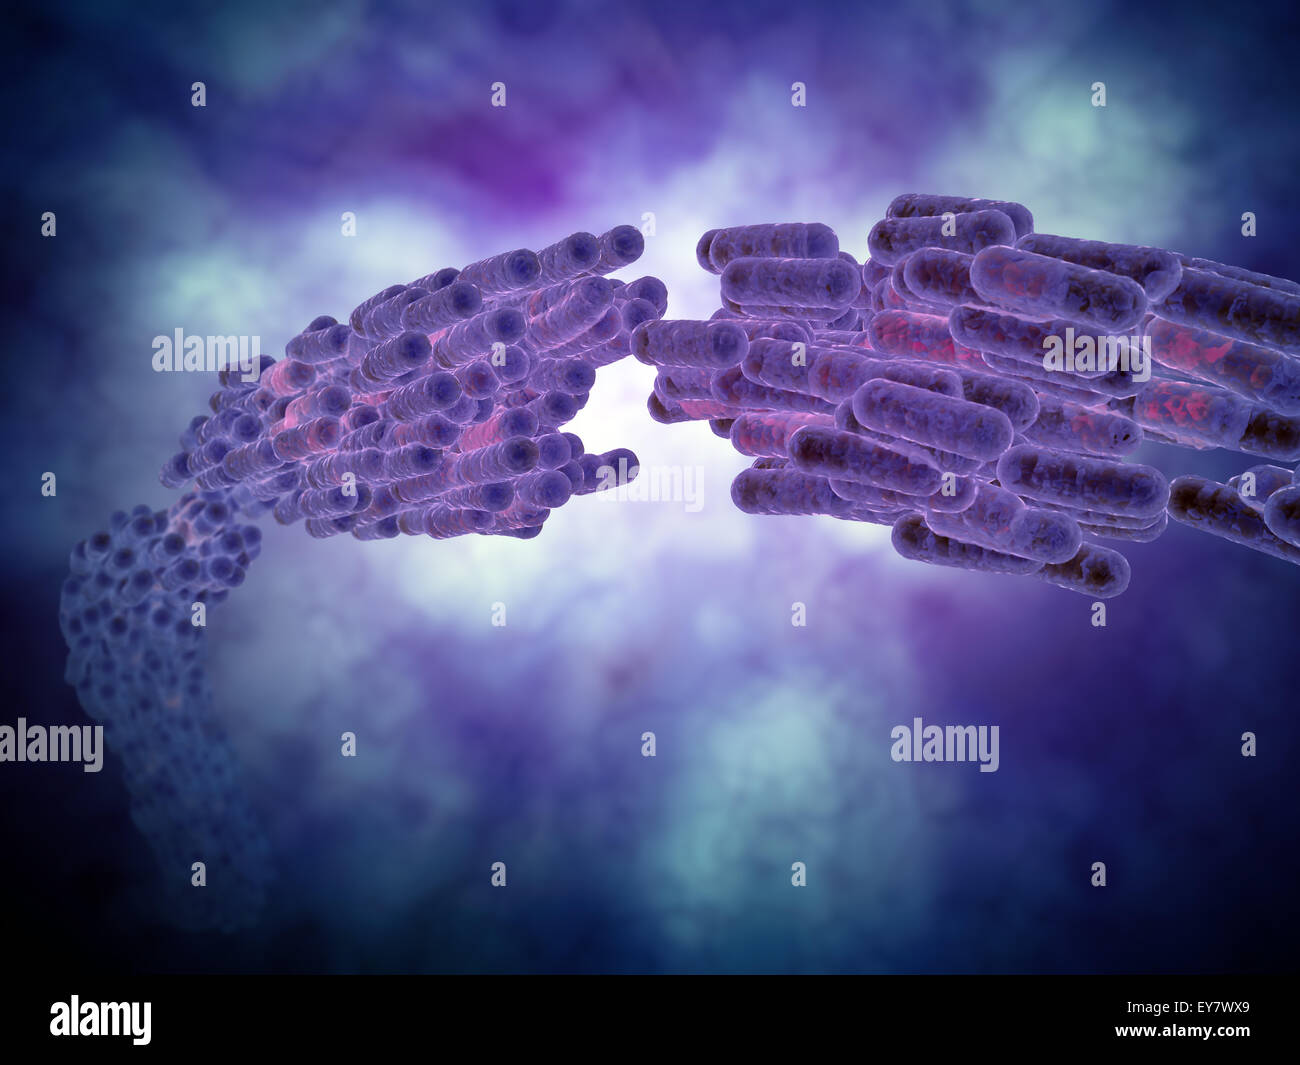 Colonie de bactérie - illustration scientifique Banque D'Images